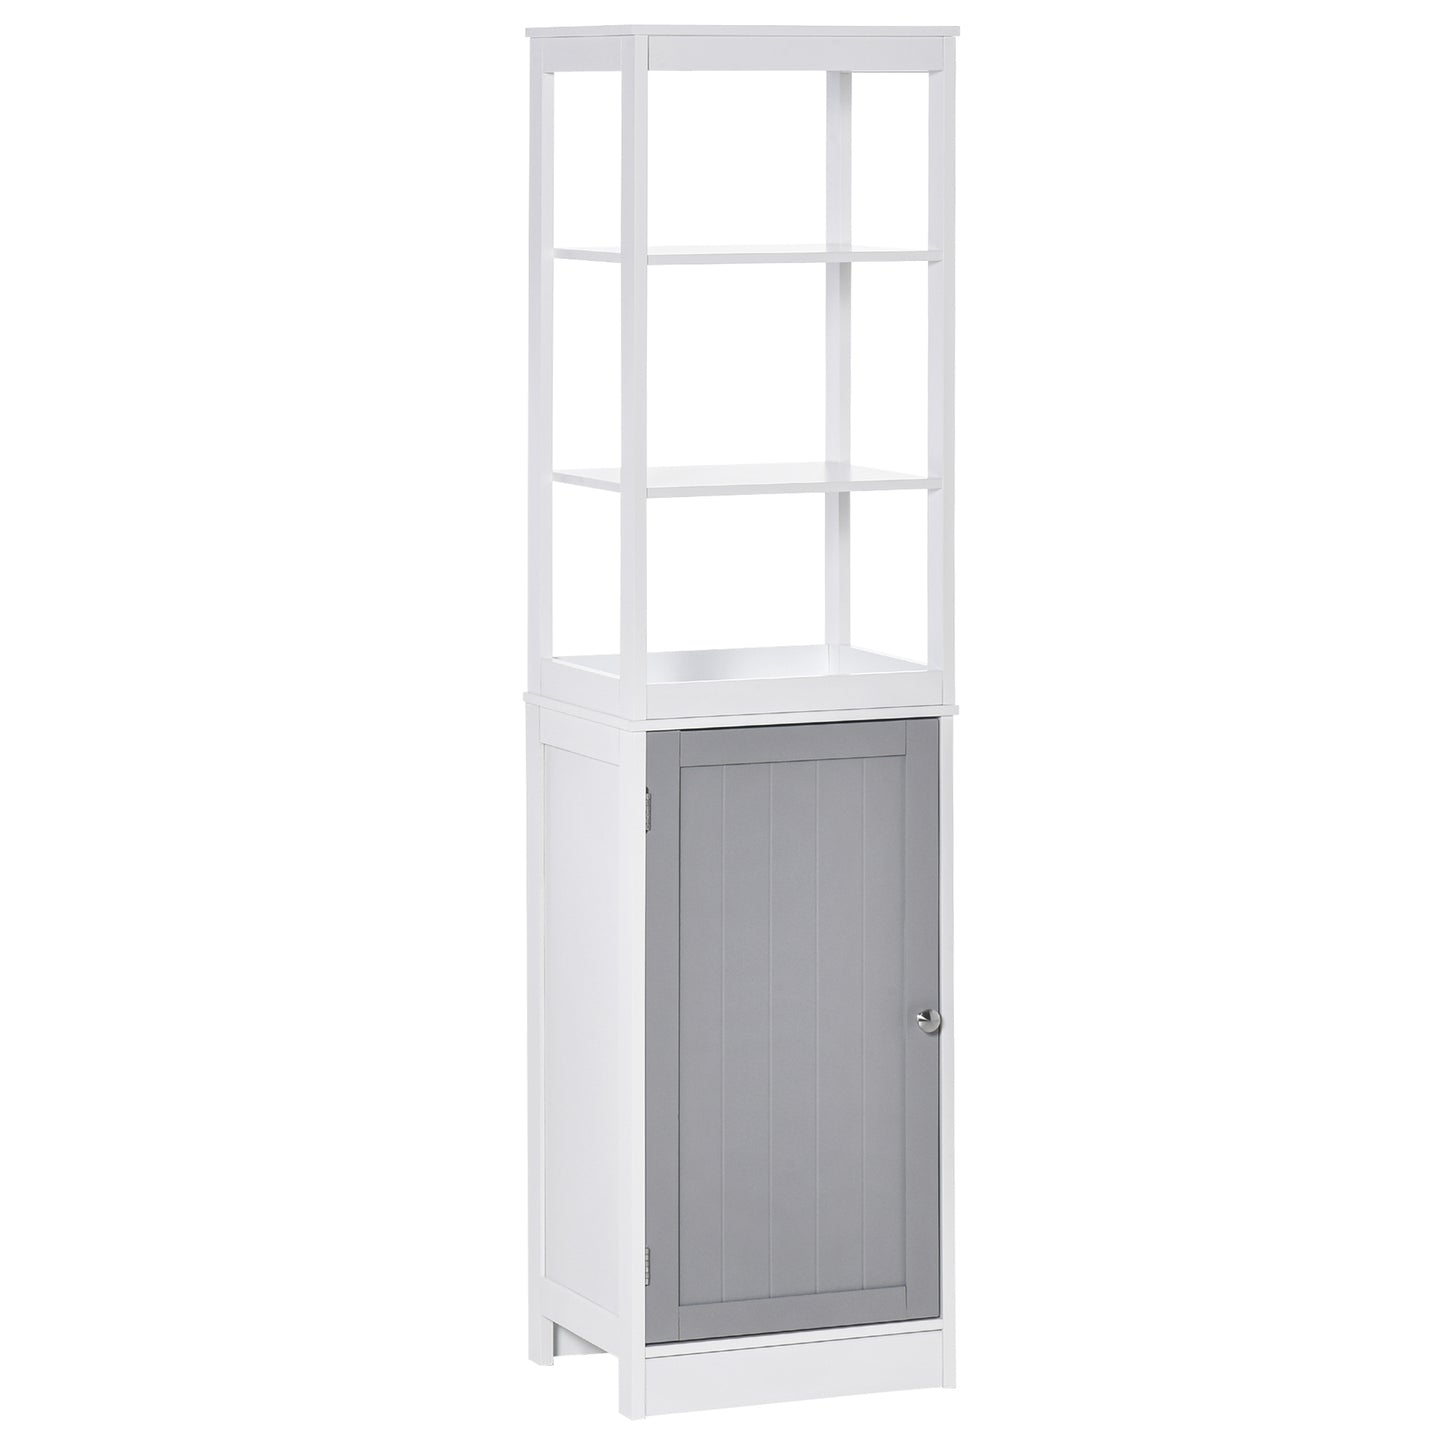 kleankin Bathroom Storage Cabinet Thin Storage Organizer with Door and Shelves